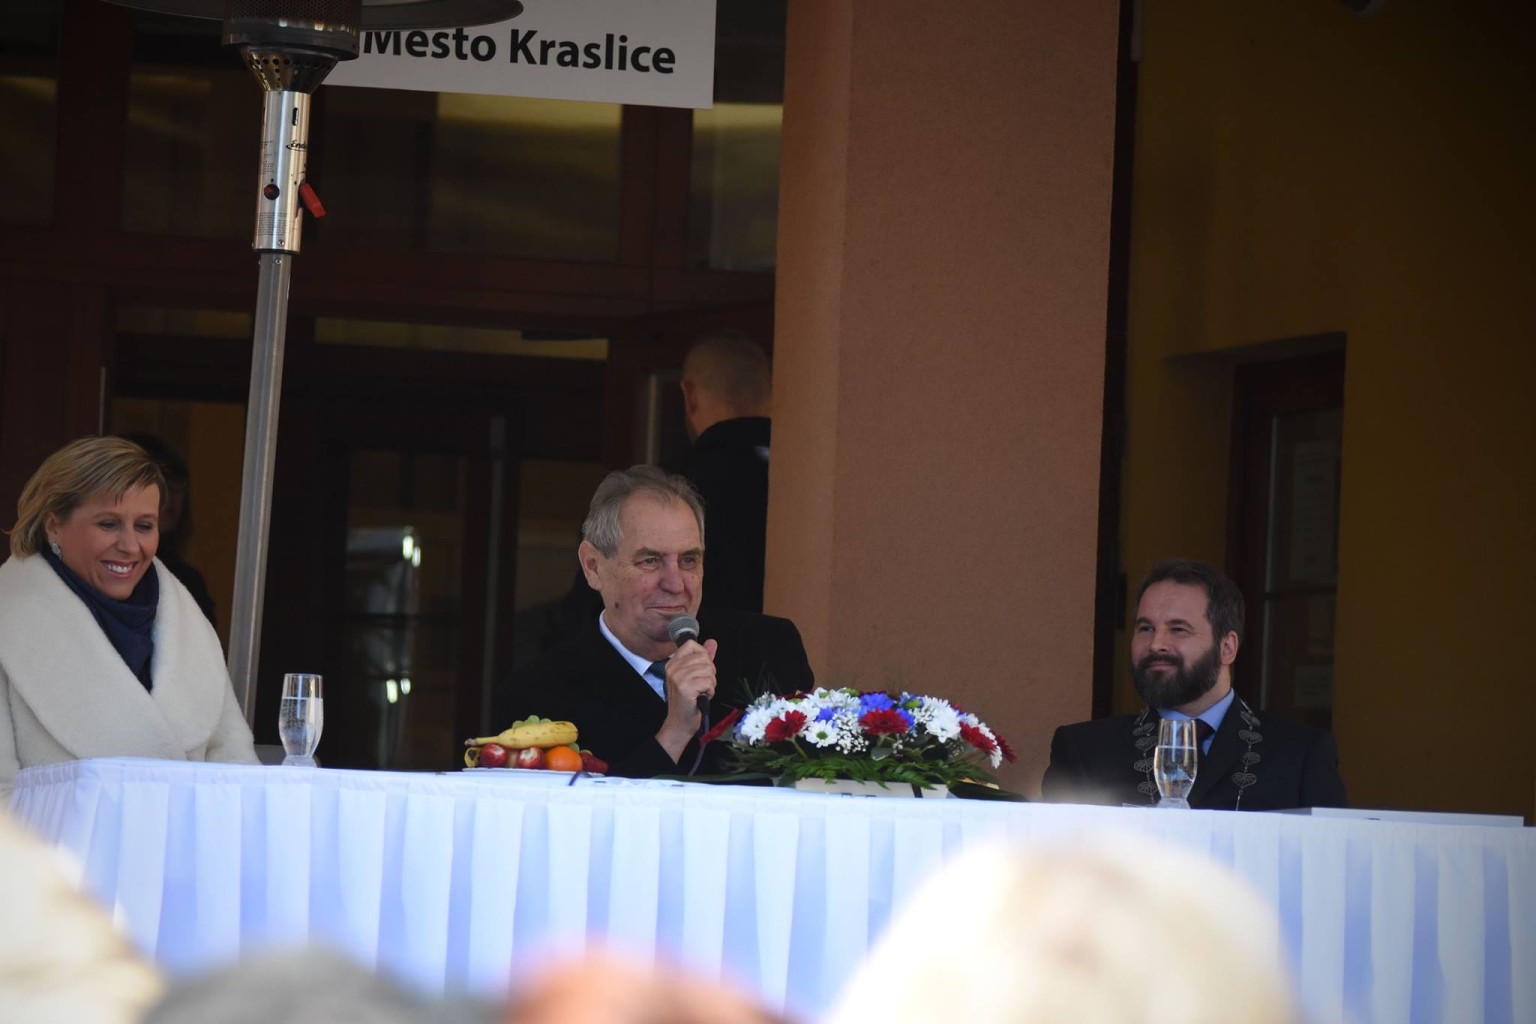 Návstěva Kraslic prezidentem Milošem Zemanem